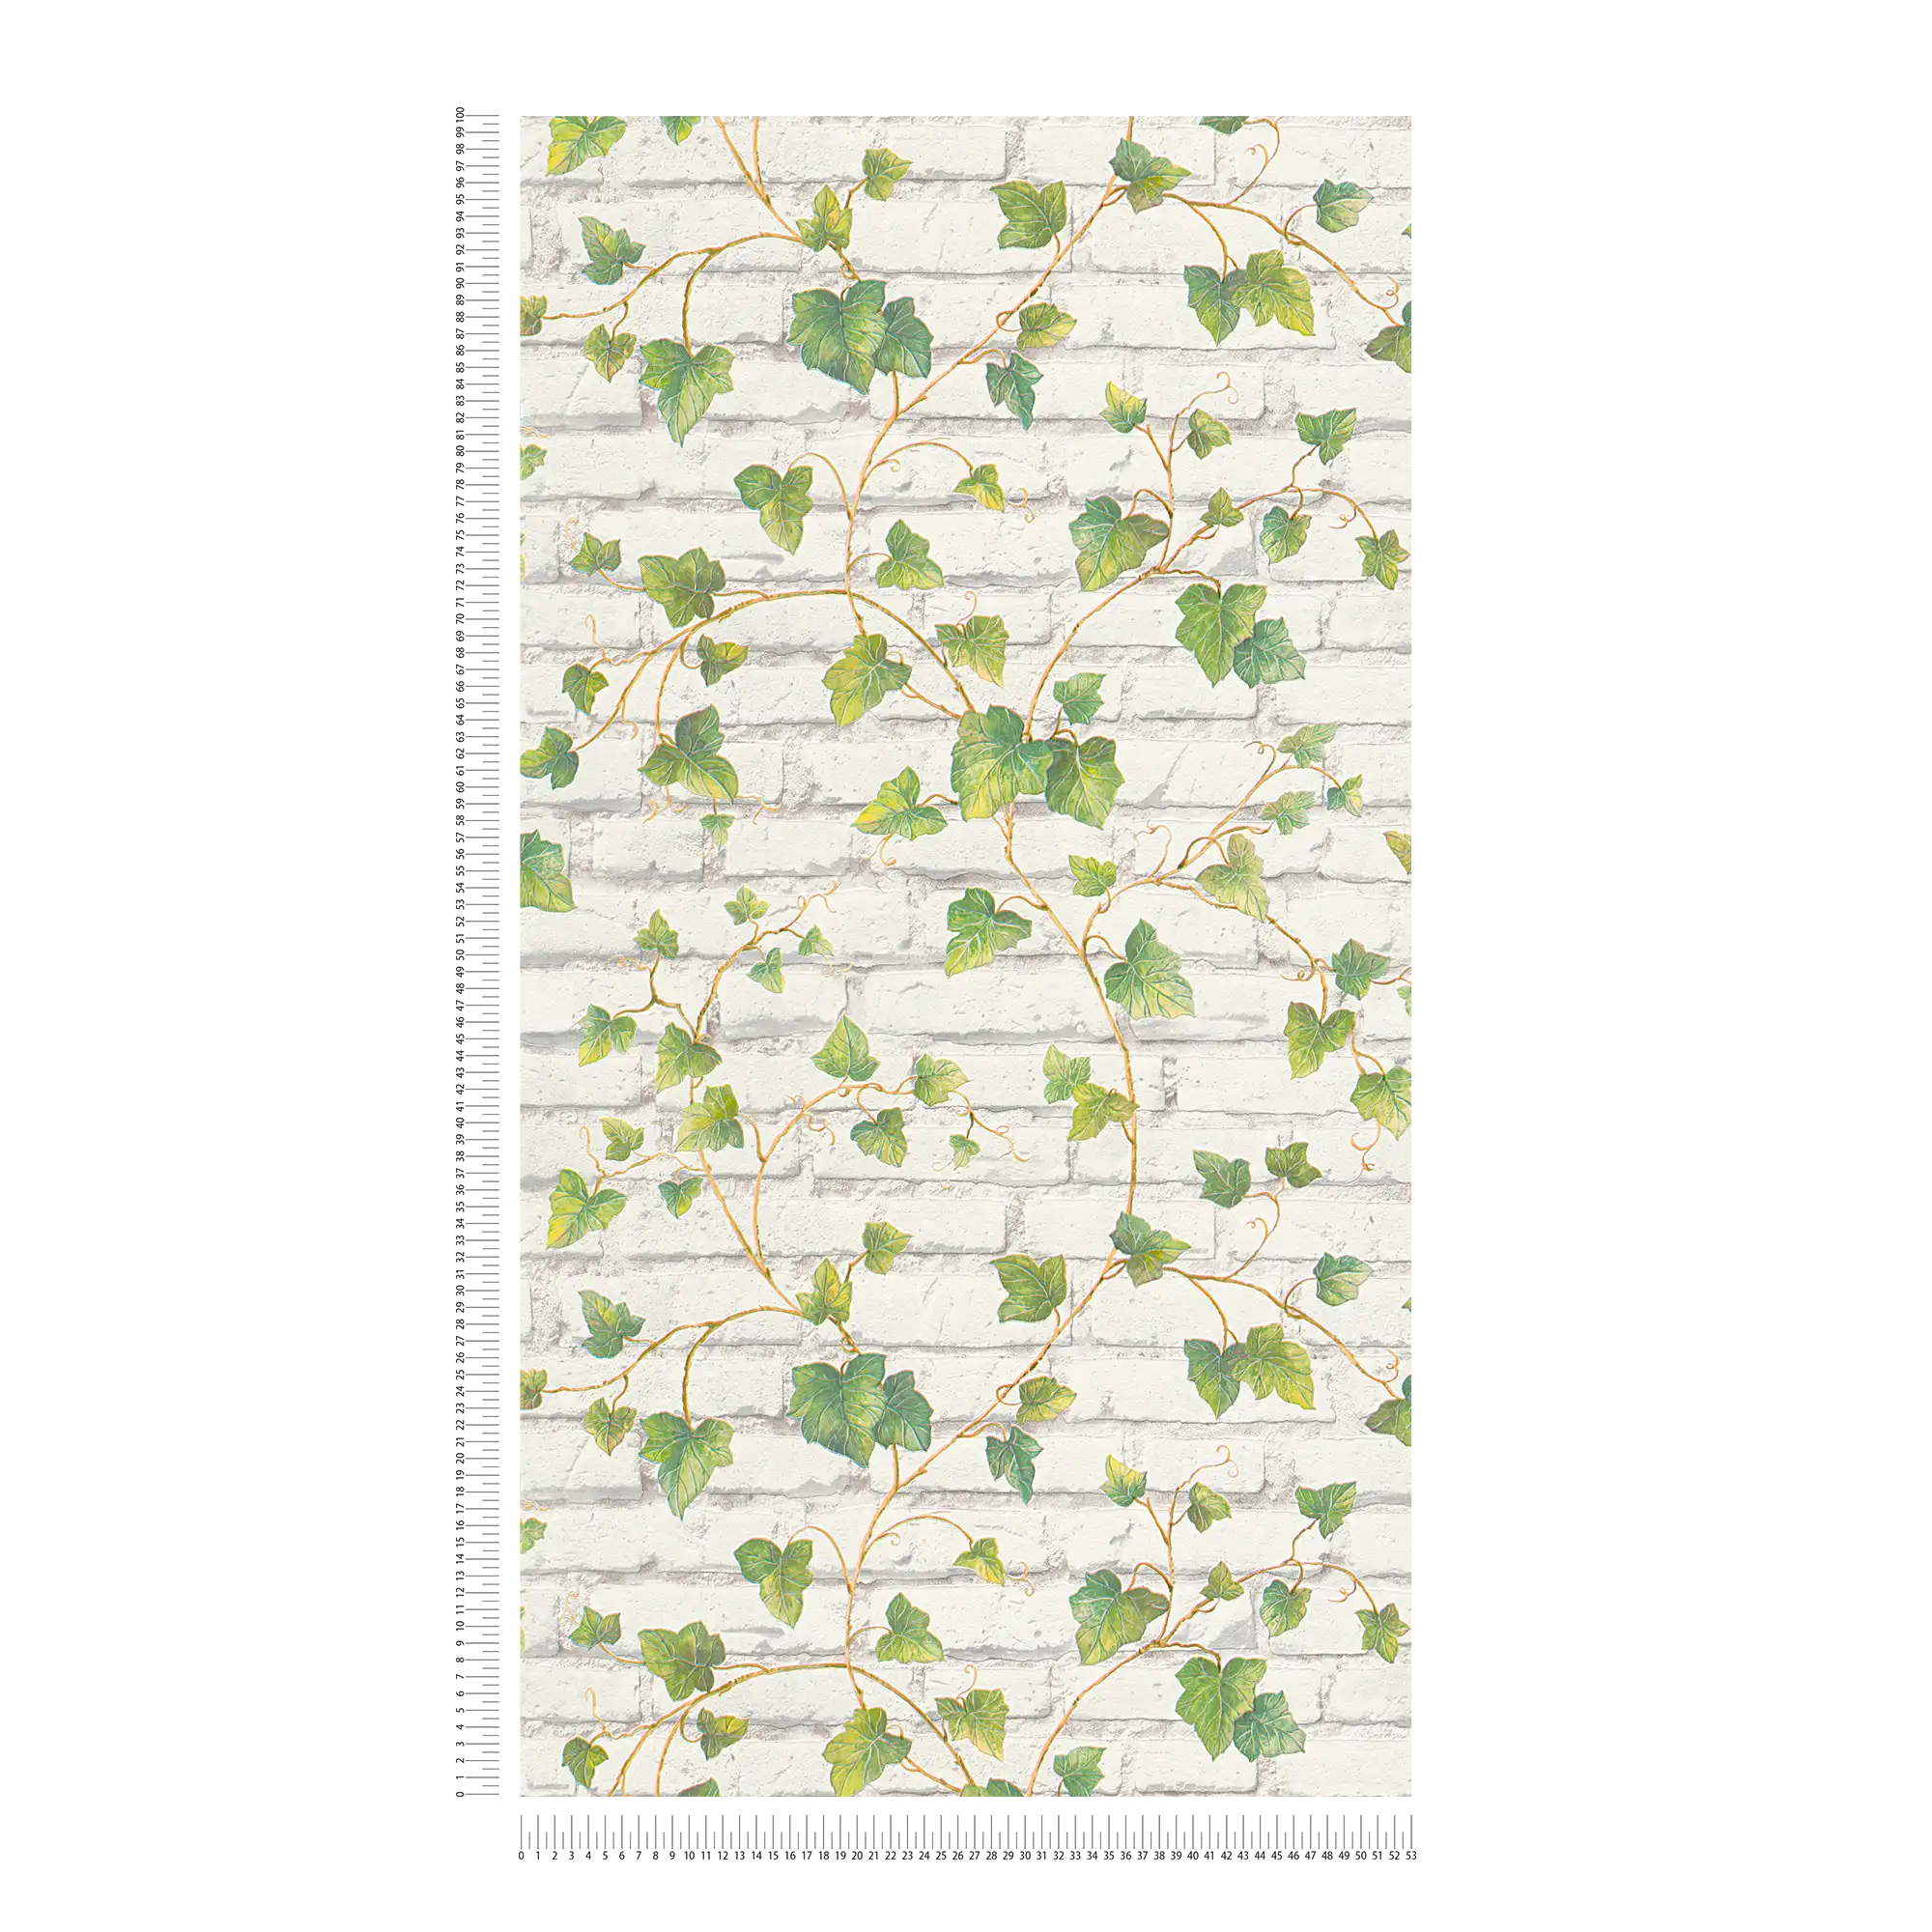             Carta da parati con muro di mattoni bianchi e tralci di edera - verde, bianco, marrone
        